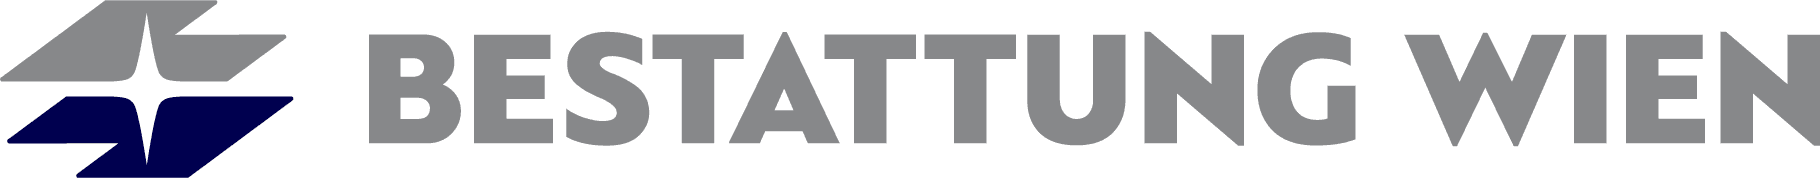 Logo BESTATTUNG WIEN - Kundenservice Favoriten